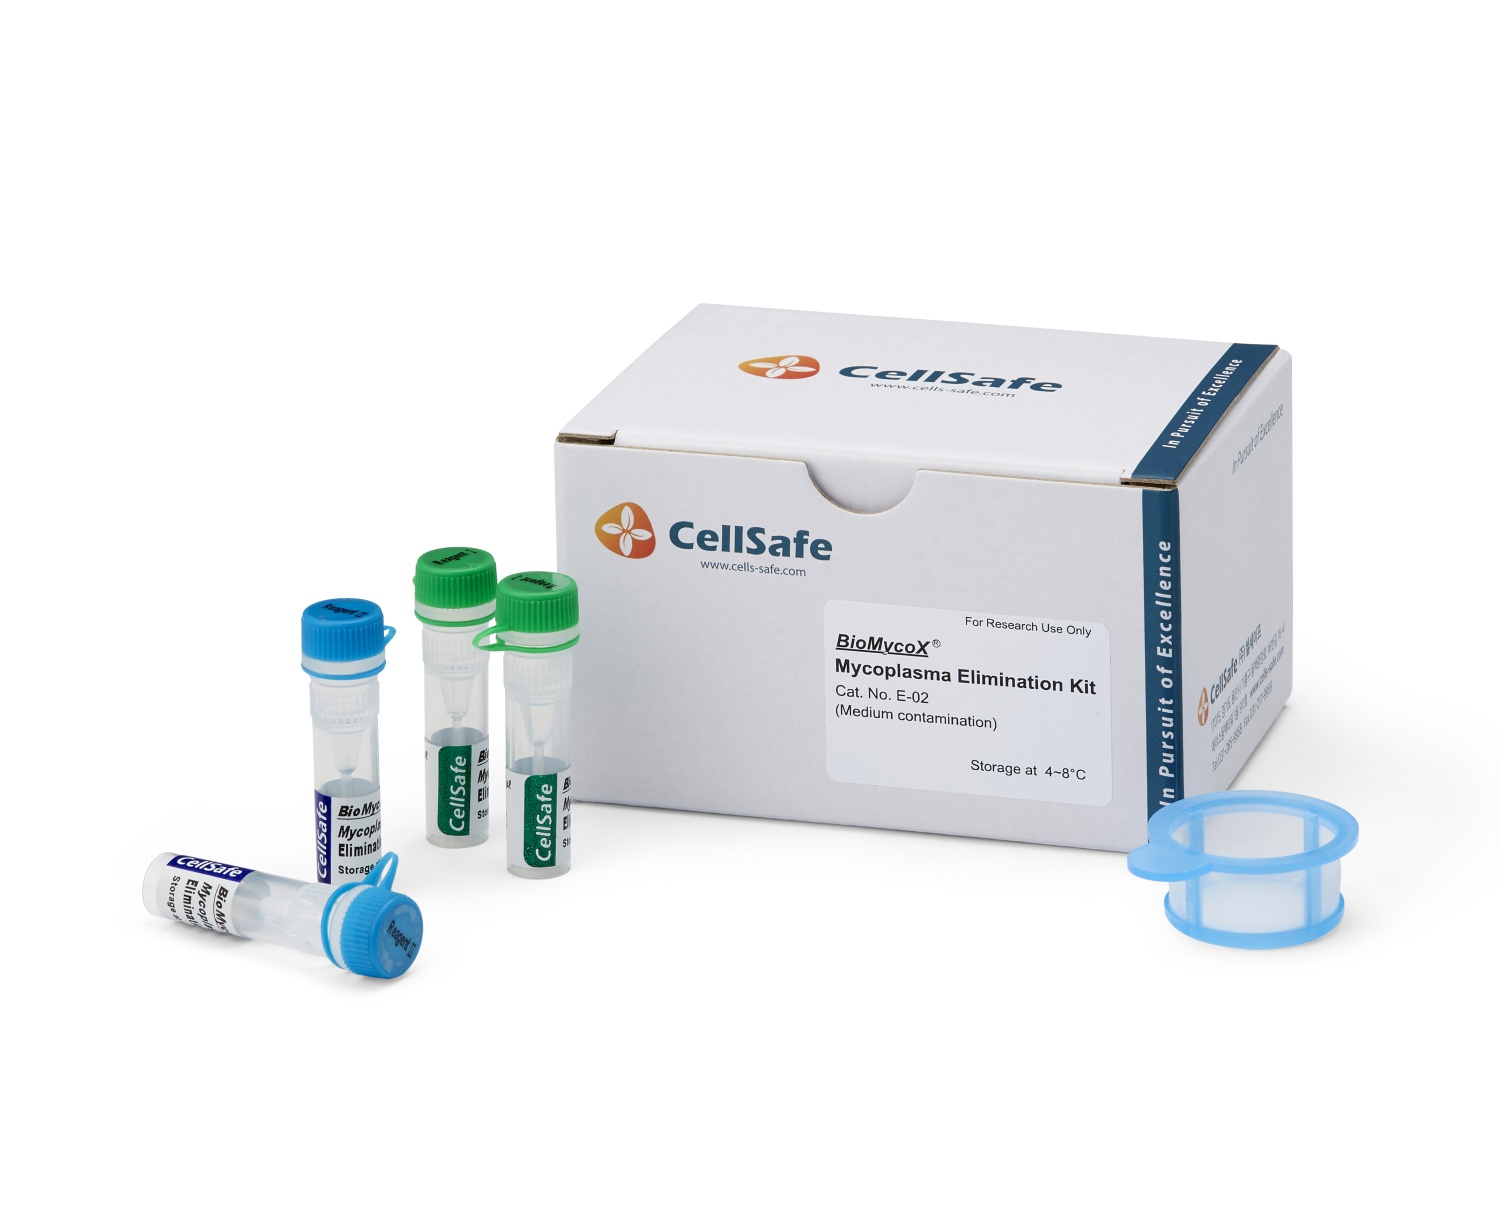 BioMycoX® Mycoplasma Elimination Kit